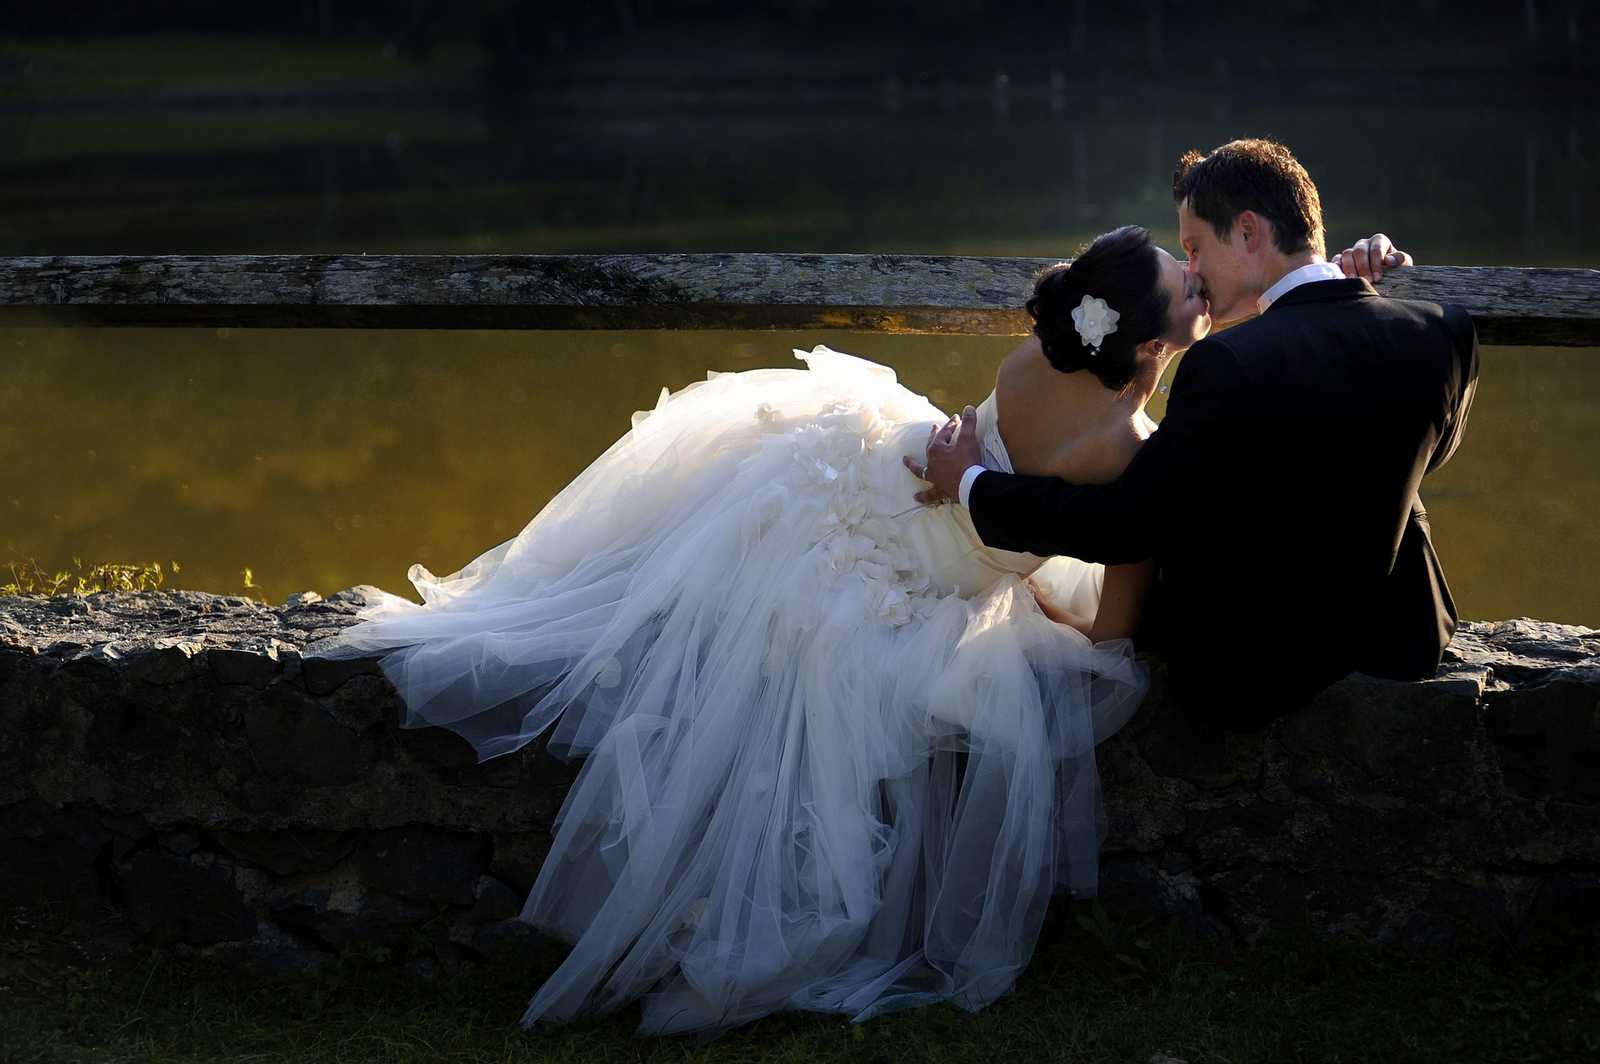 gettzyphoto-bride-3085841-1600x